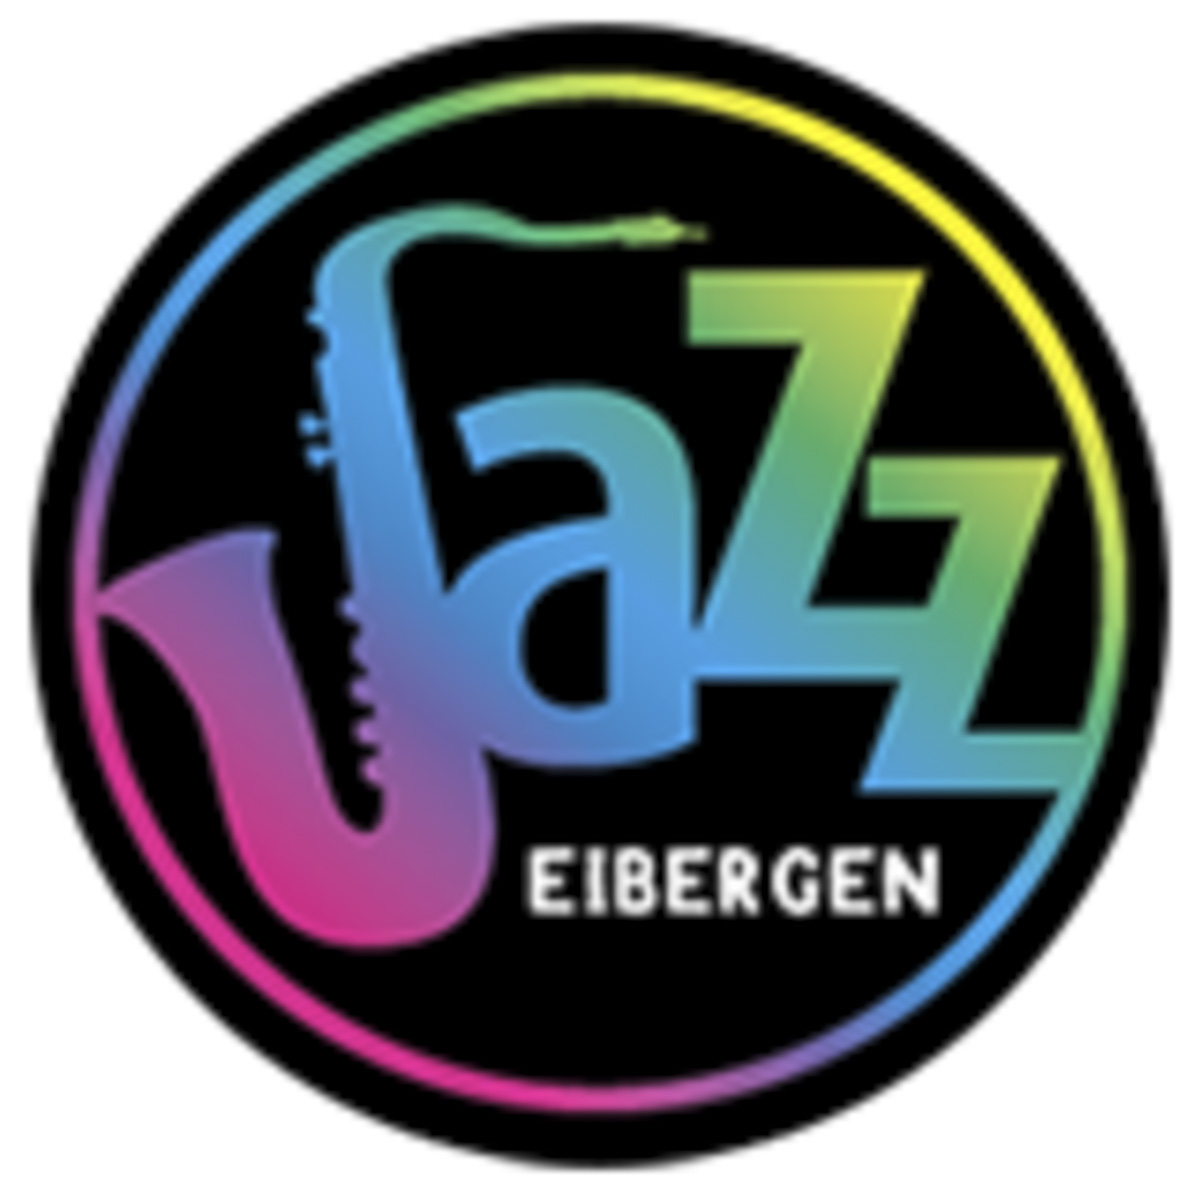 Jazz Eibergen